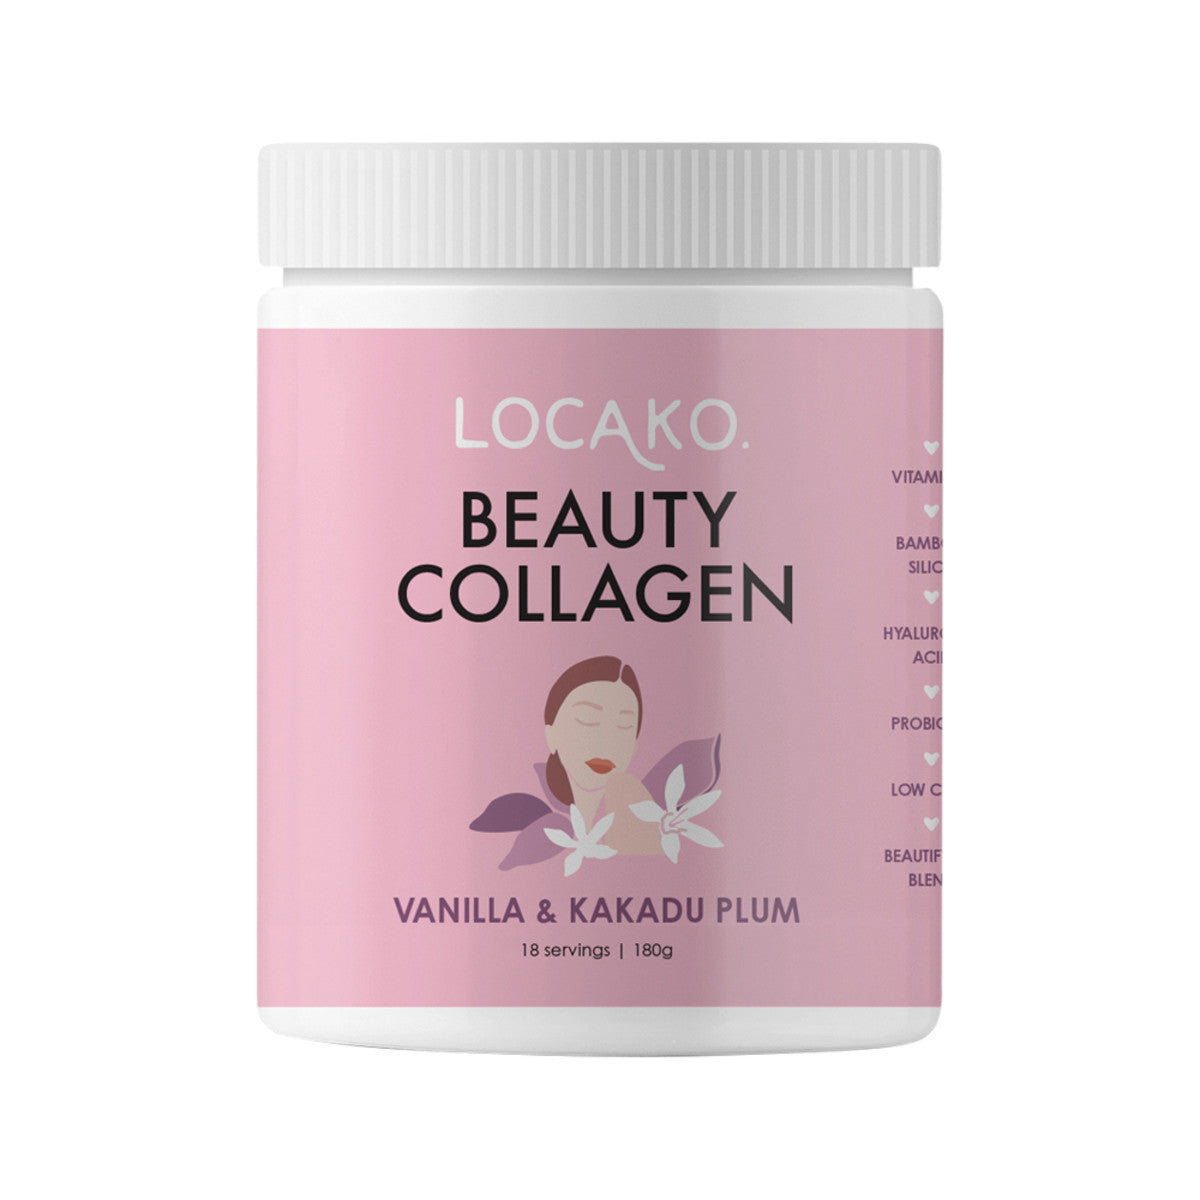 Locako Beauty Collagen Vanilla and Kakadu Plum